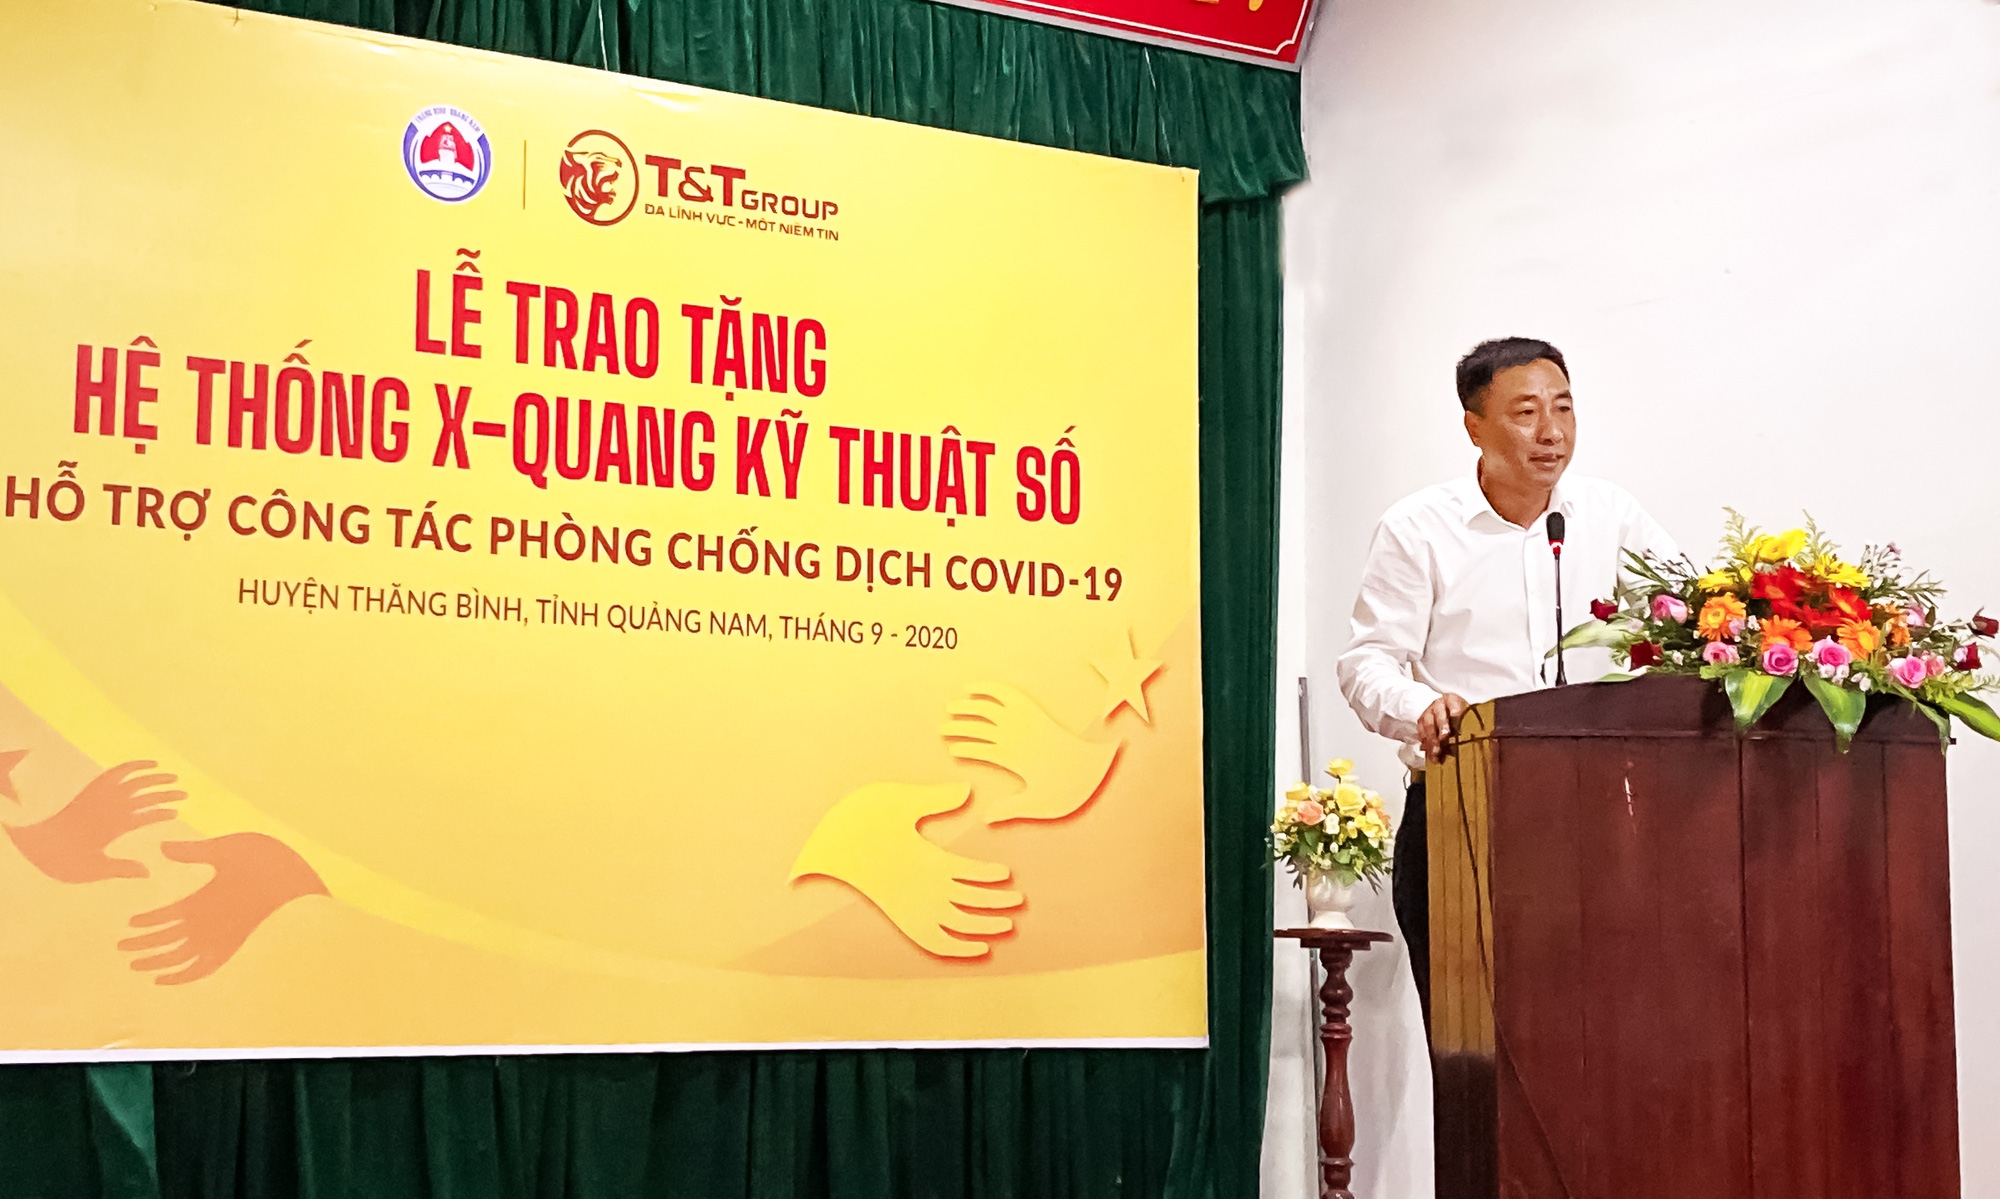 Tập đoàn T&amp;T Group trao tặng hệ thống X Quang kỹ thuật số hỗ trợ cho huyện Thăng Bình (tỉnh Quảng Nam) phòng chống dịch Covid-19